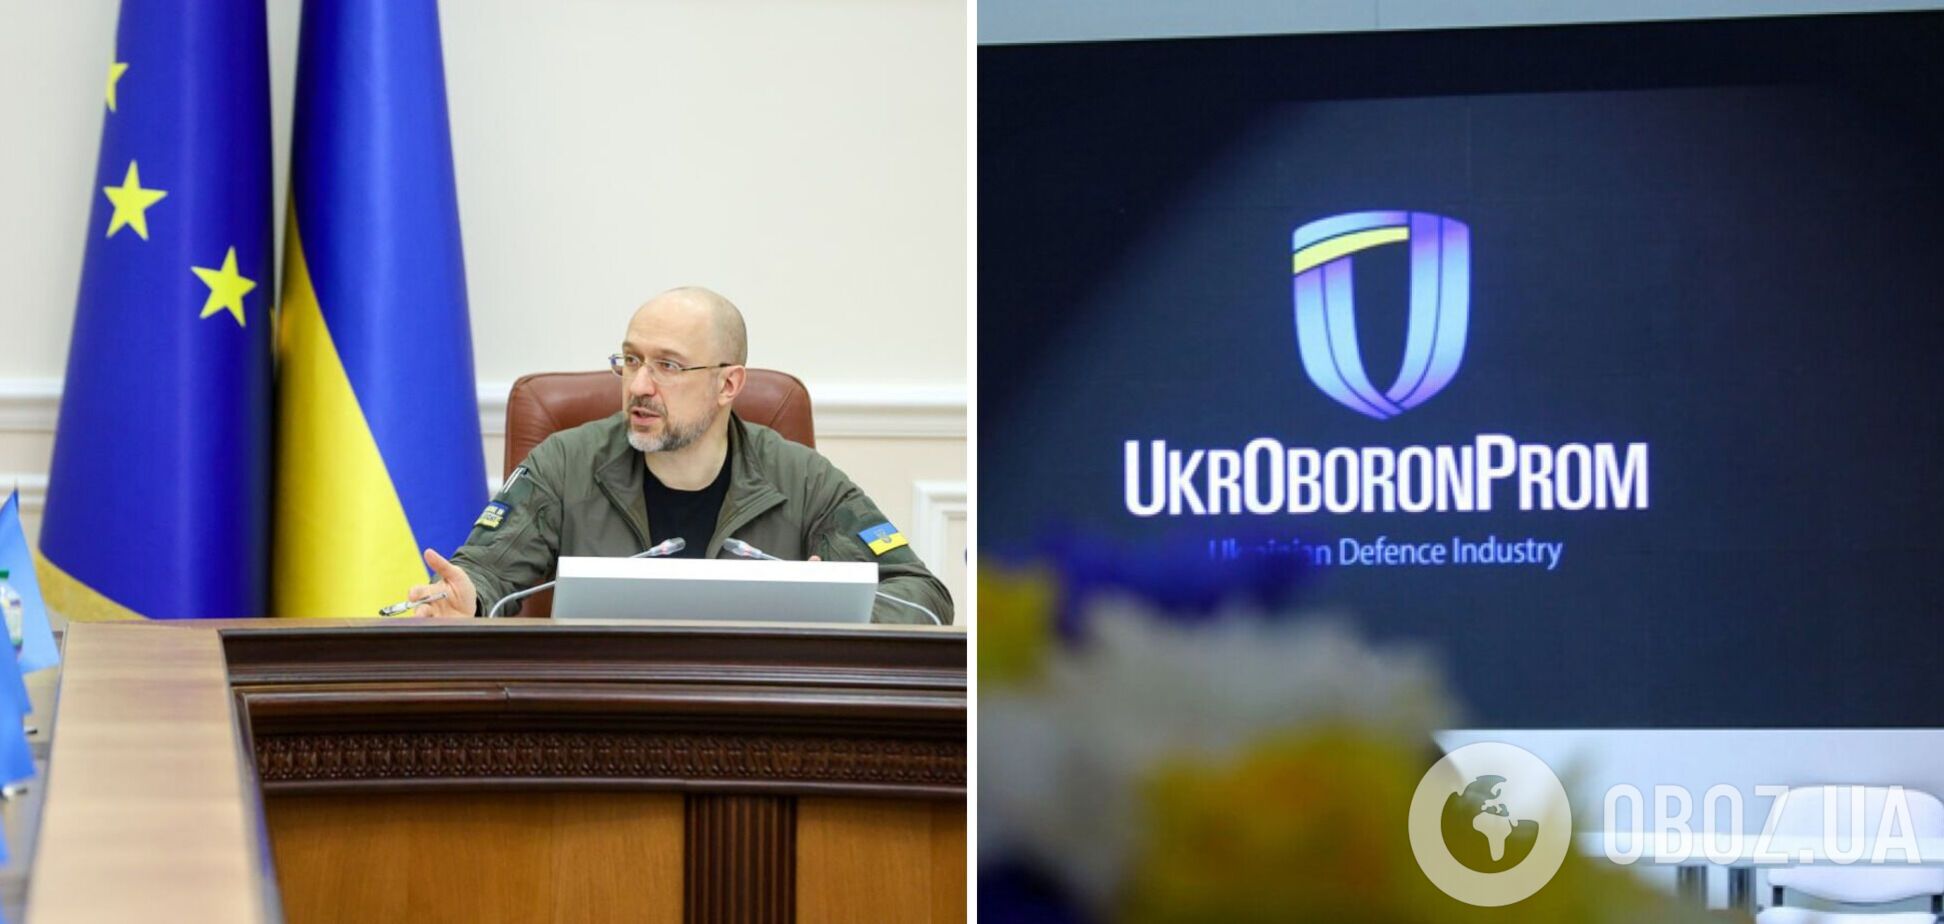 Госконцерн 'Укроборонпром' заменят на акционерное общество в госсобственности